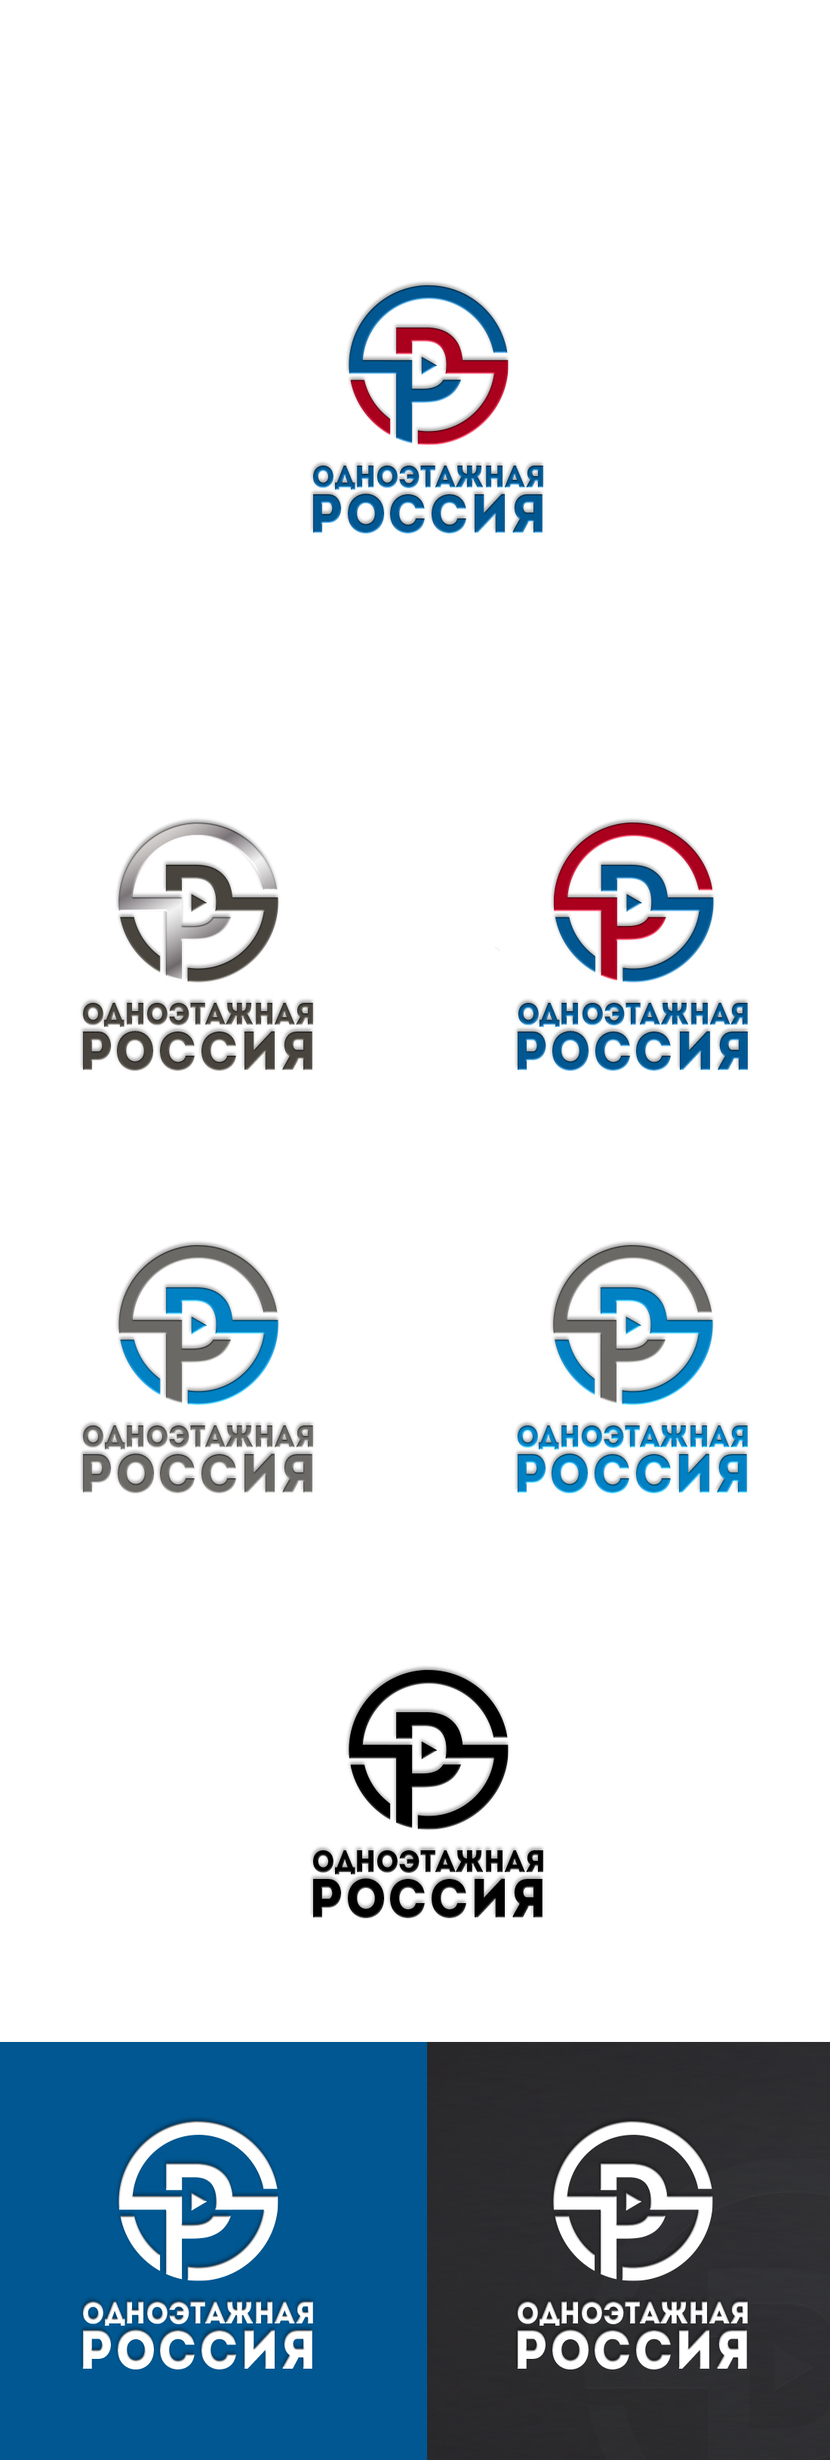 Создание логотипа для ютуб-канала